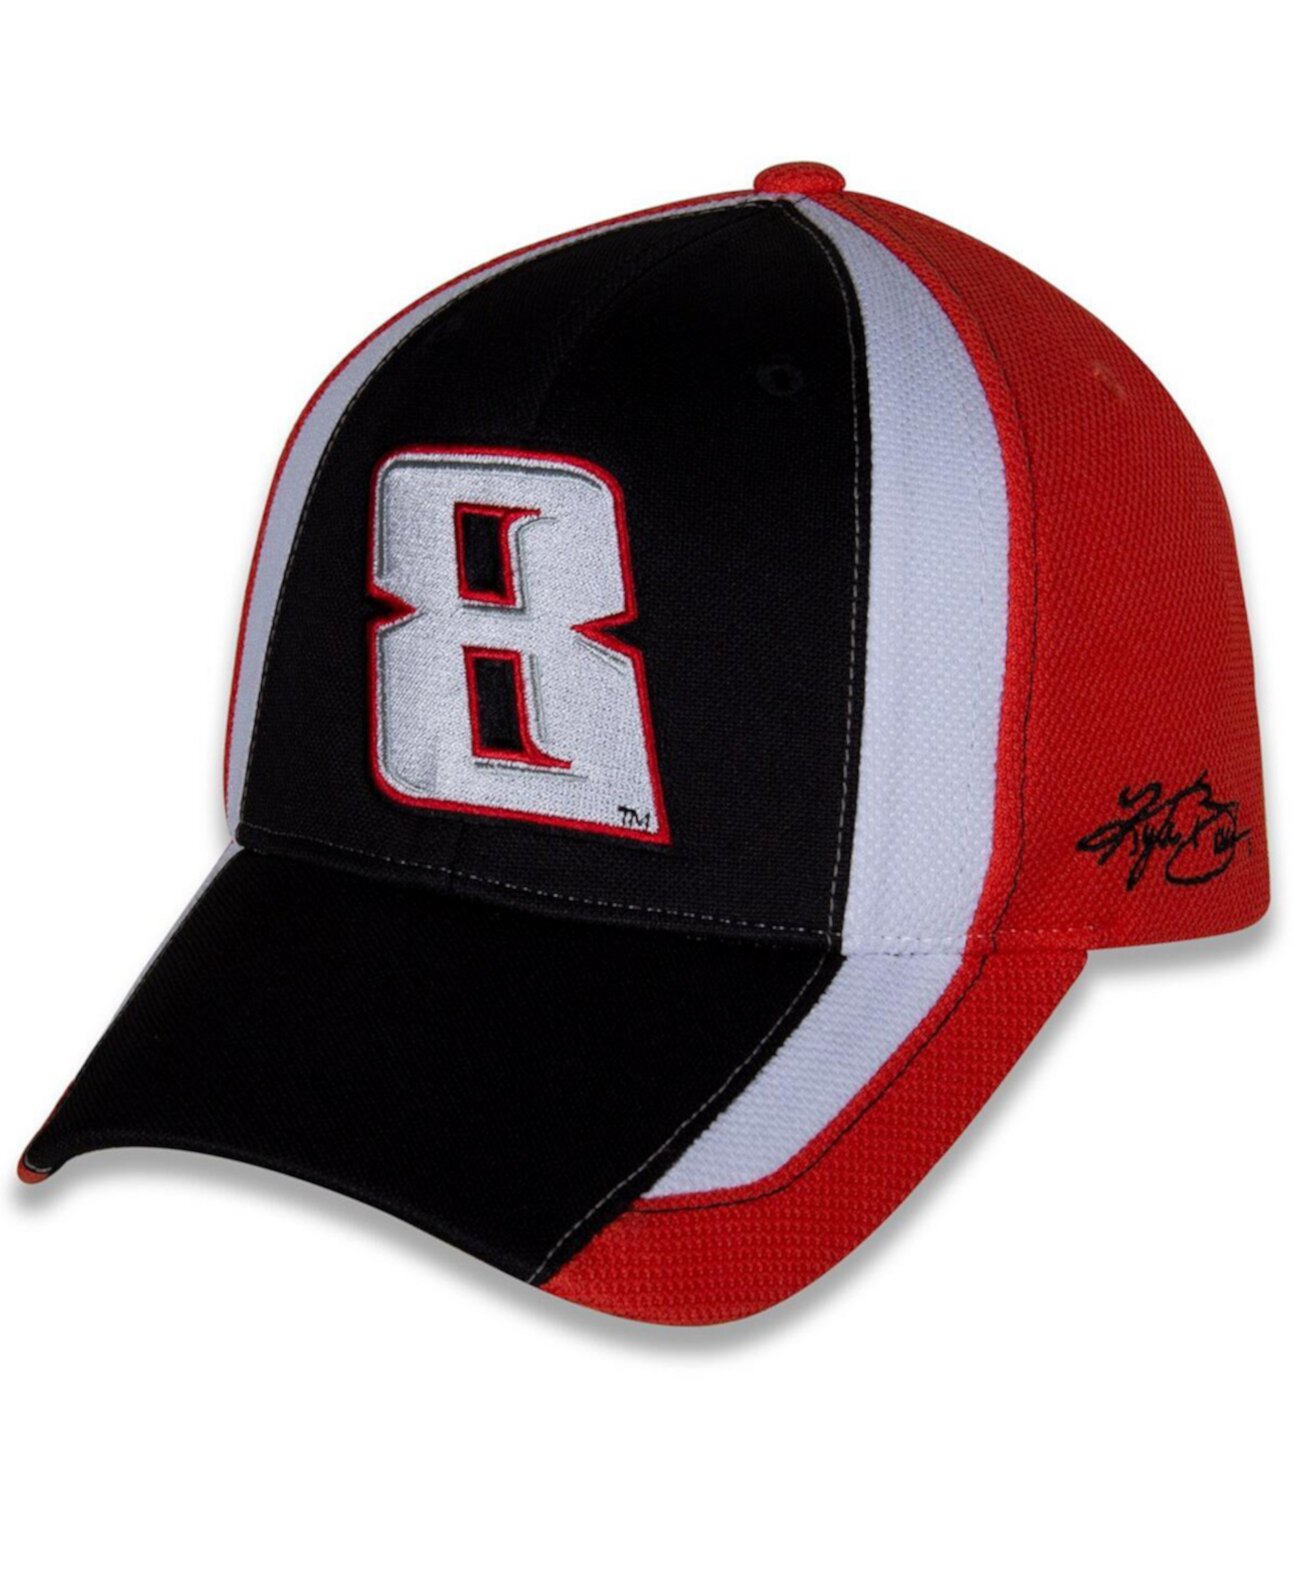 Мужская регулируемая шляпа Kyle Busch Restart черного и белого цвета Richard Childress Racing Team Collection